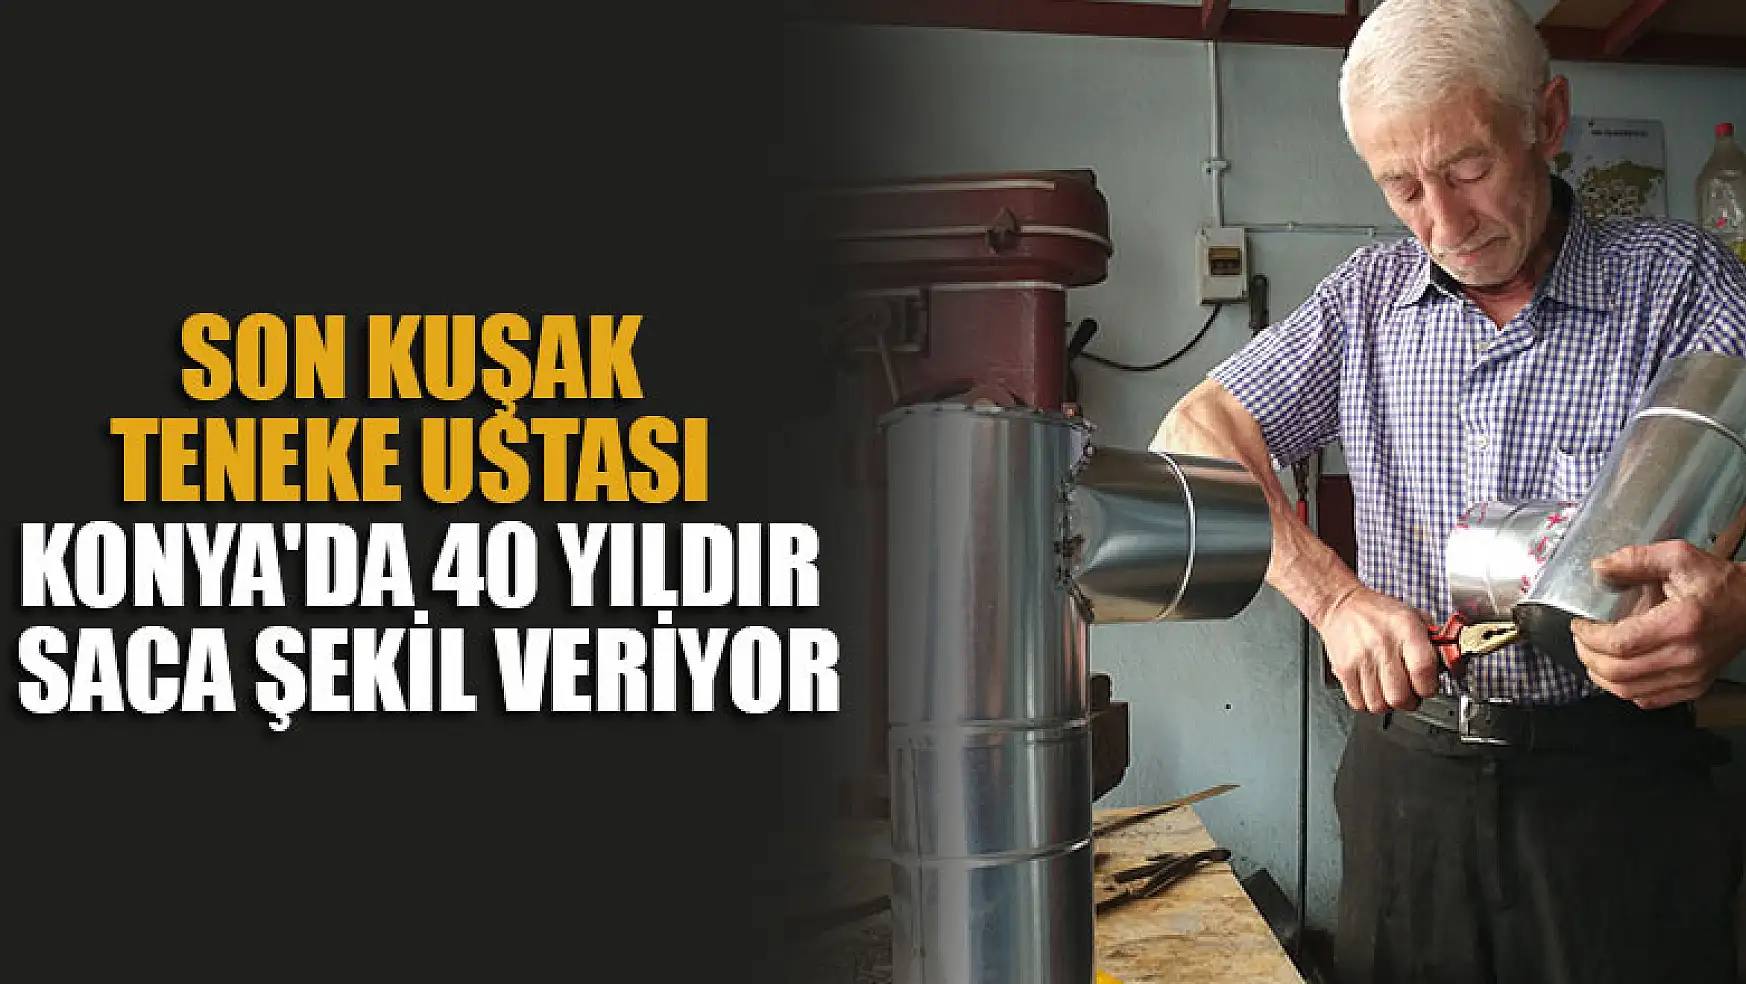 Son kuşak teneke ustası Konya'da 40 yıldır saca şekil veriyor